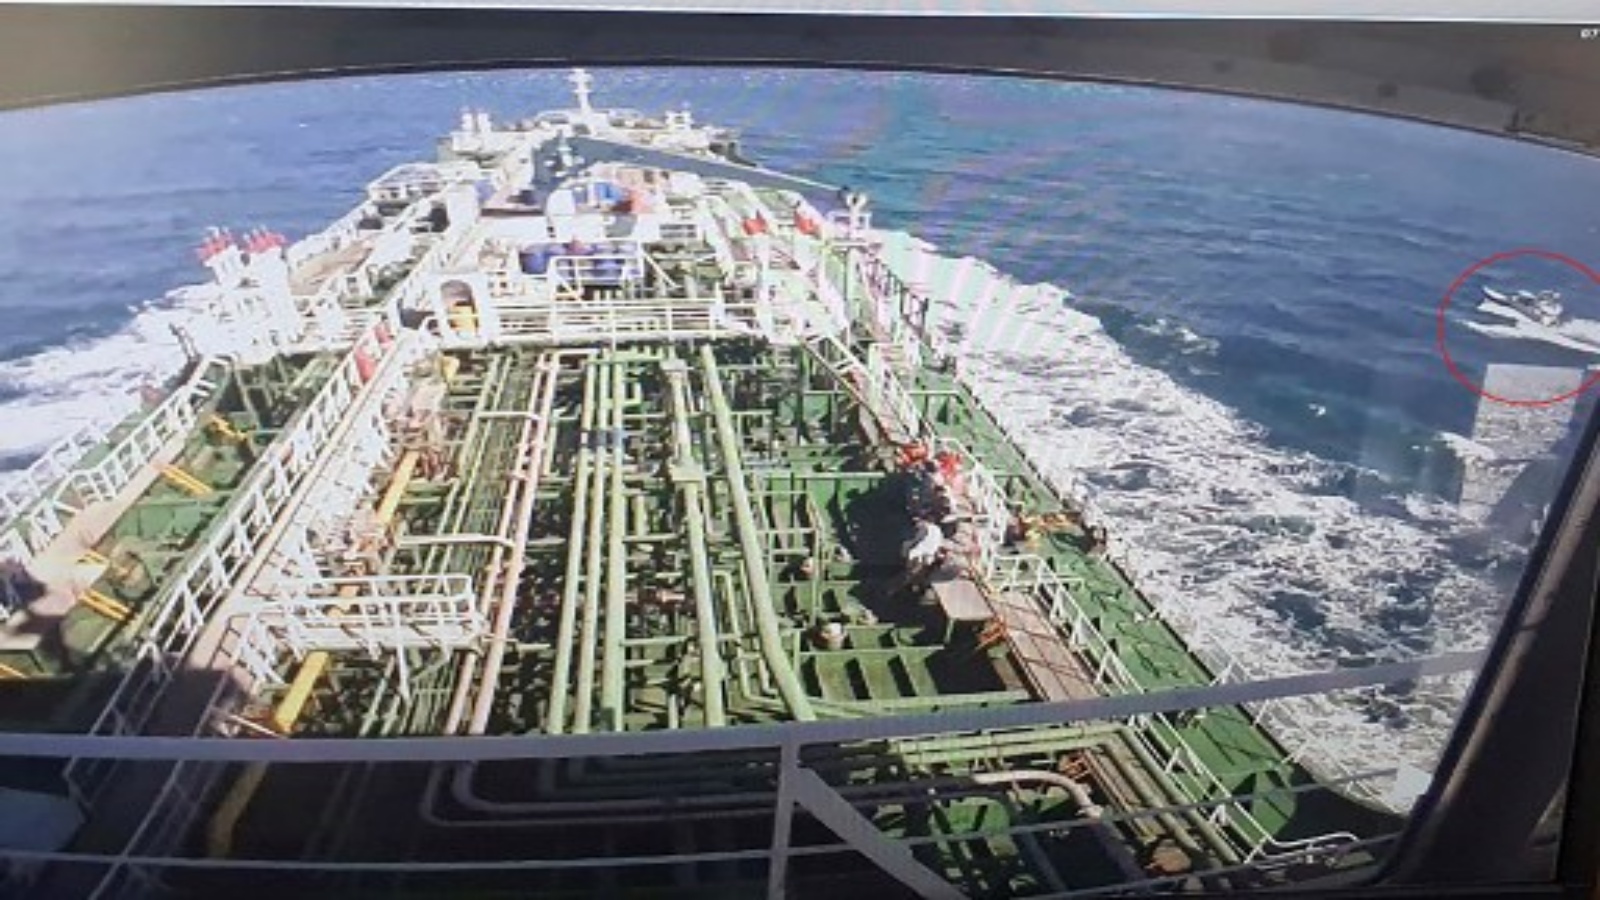 ناقلة نفط ترفع علم كوريا الجنوبية ، على شاشة بينما يظهر قارب الحرس الثوري الإيراني في دائرة حمراء على الشاشة في الشركة المالكة للناقلة DM Shipping ، في بوسان في 4 يناير ، 2021. طالبت وزارة خارجية كوريا الجنوبية في 4 يناير 